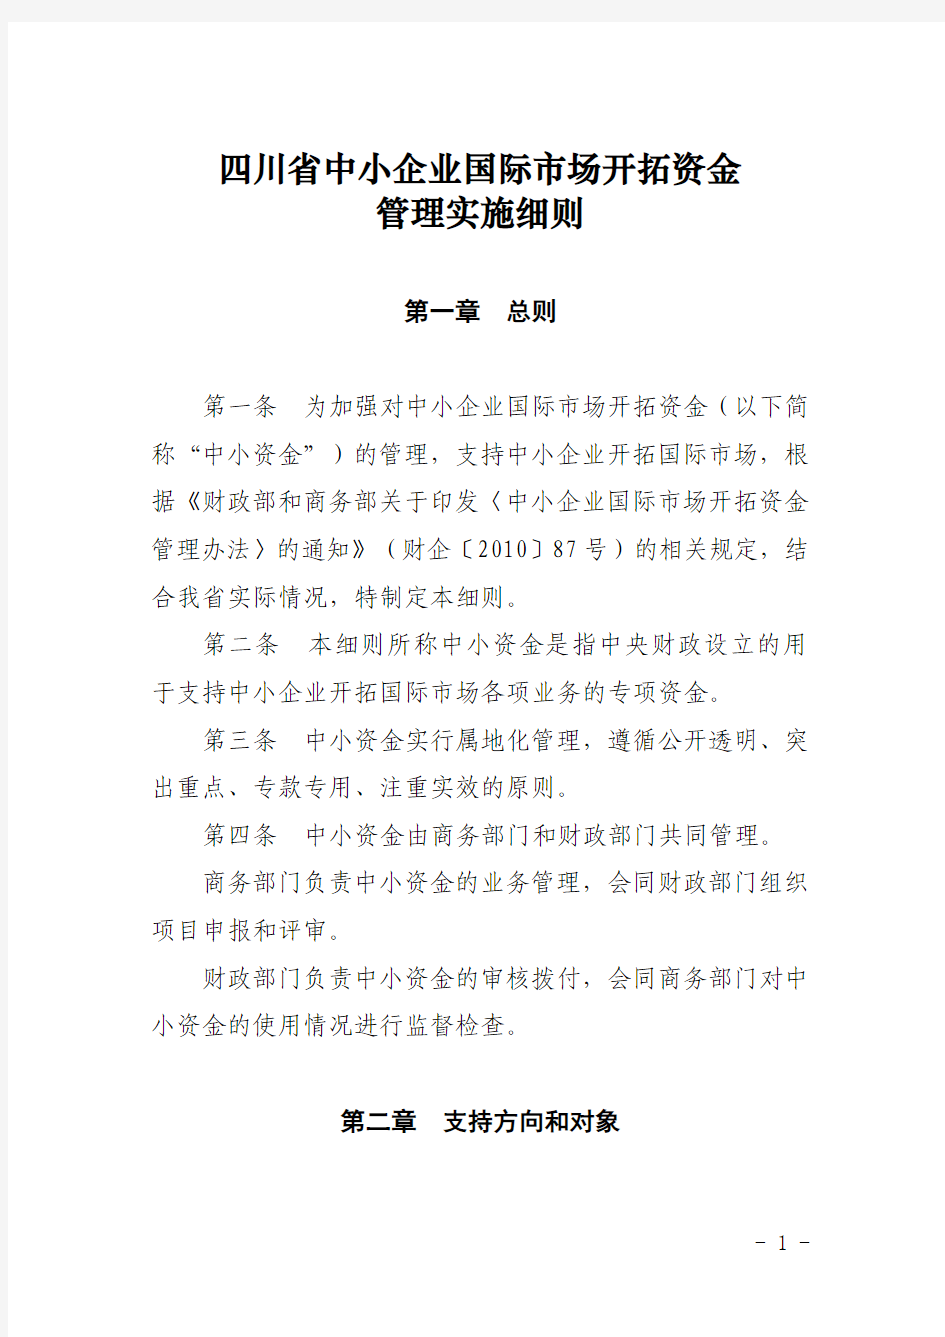 四川省商务厅关于印发中小企业国际市场开拓资金管理暂行办法的通知